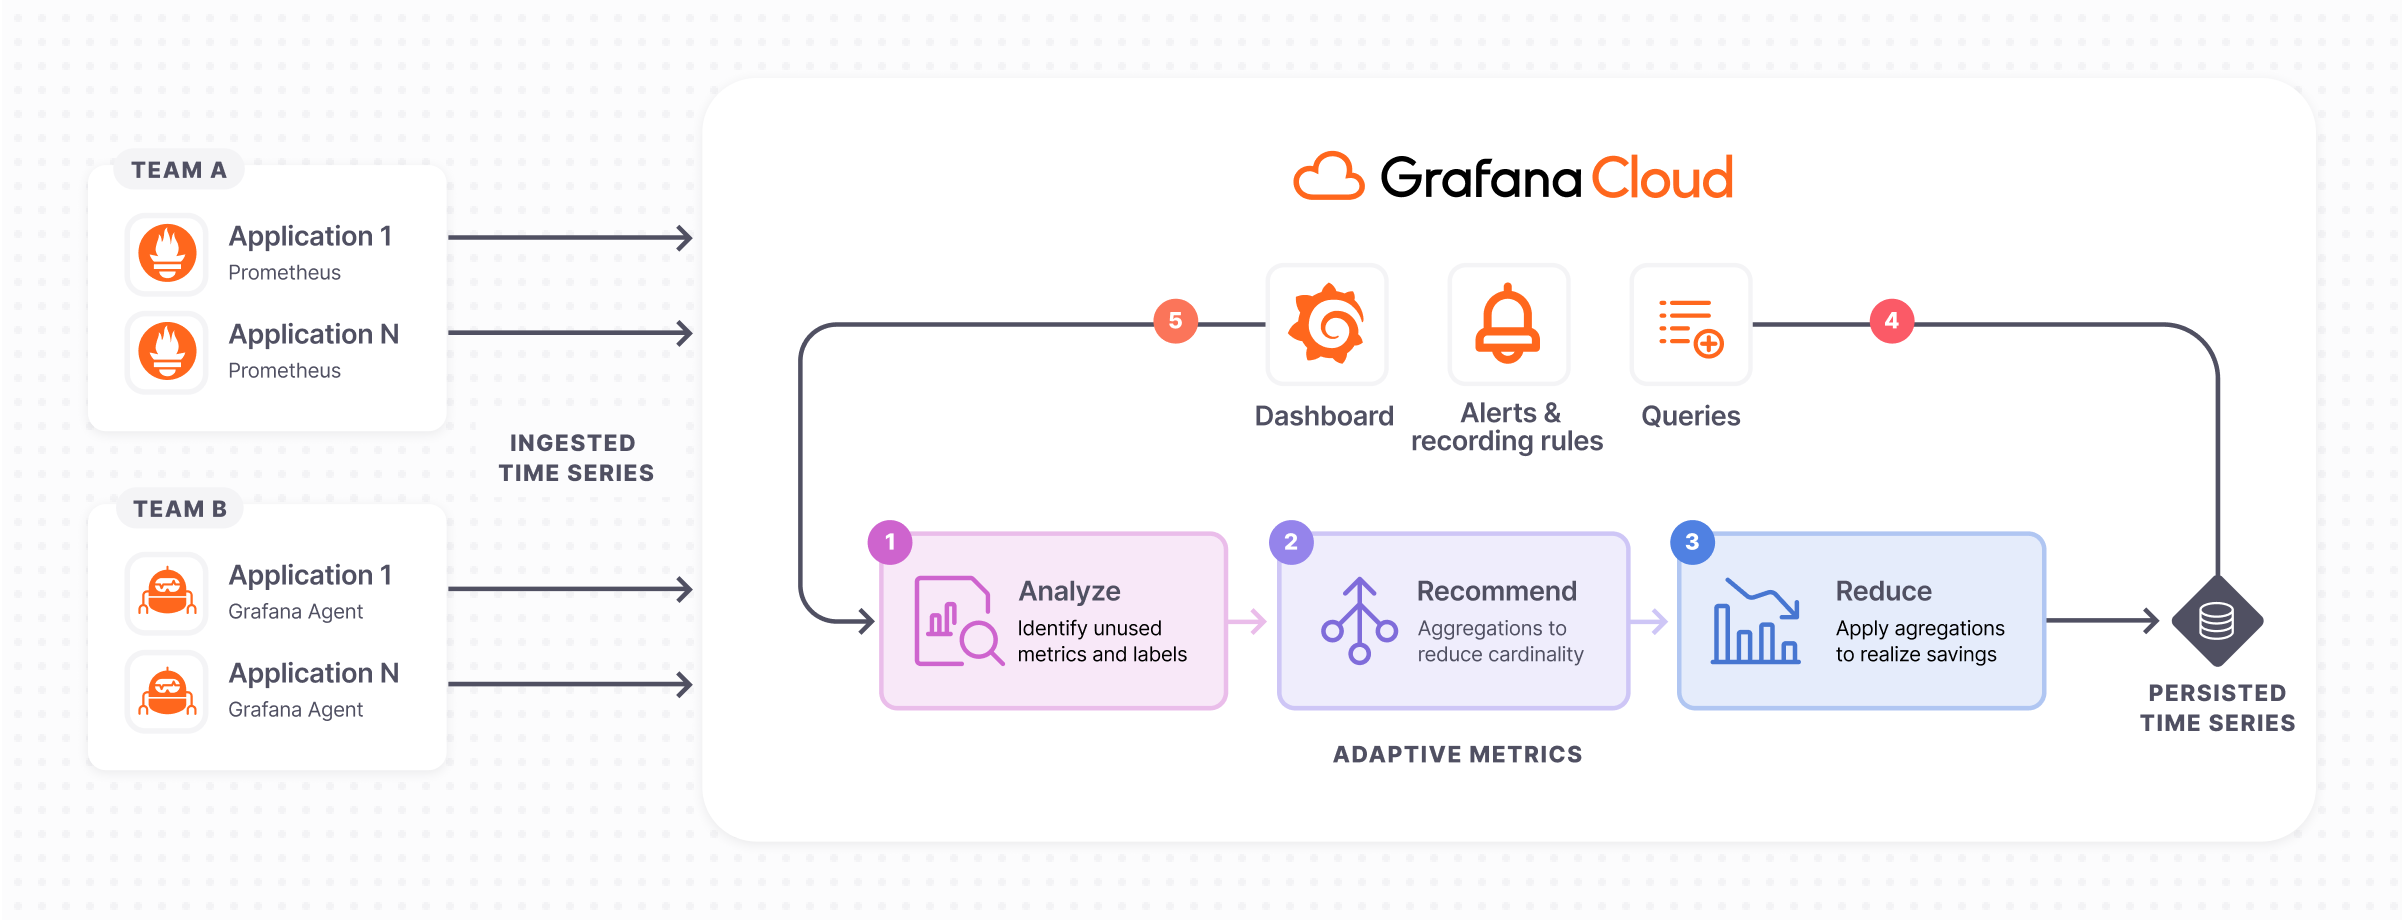 Diagram of how Adaptive Metrics works in Grafana Cloud